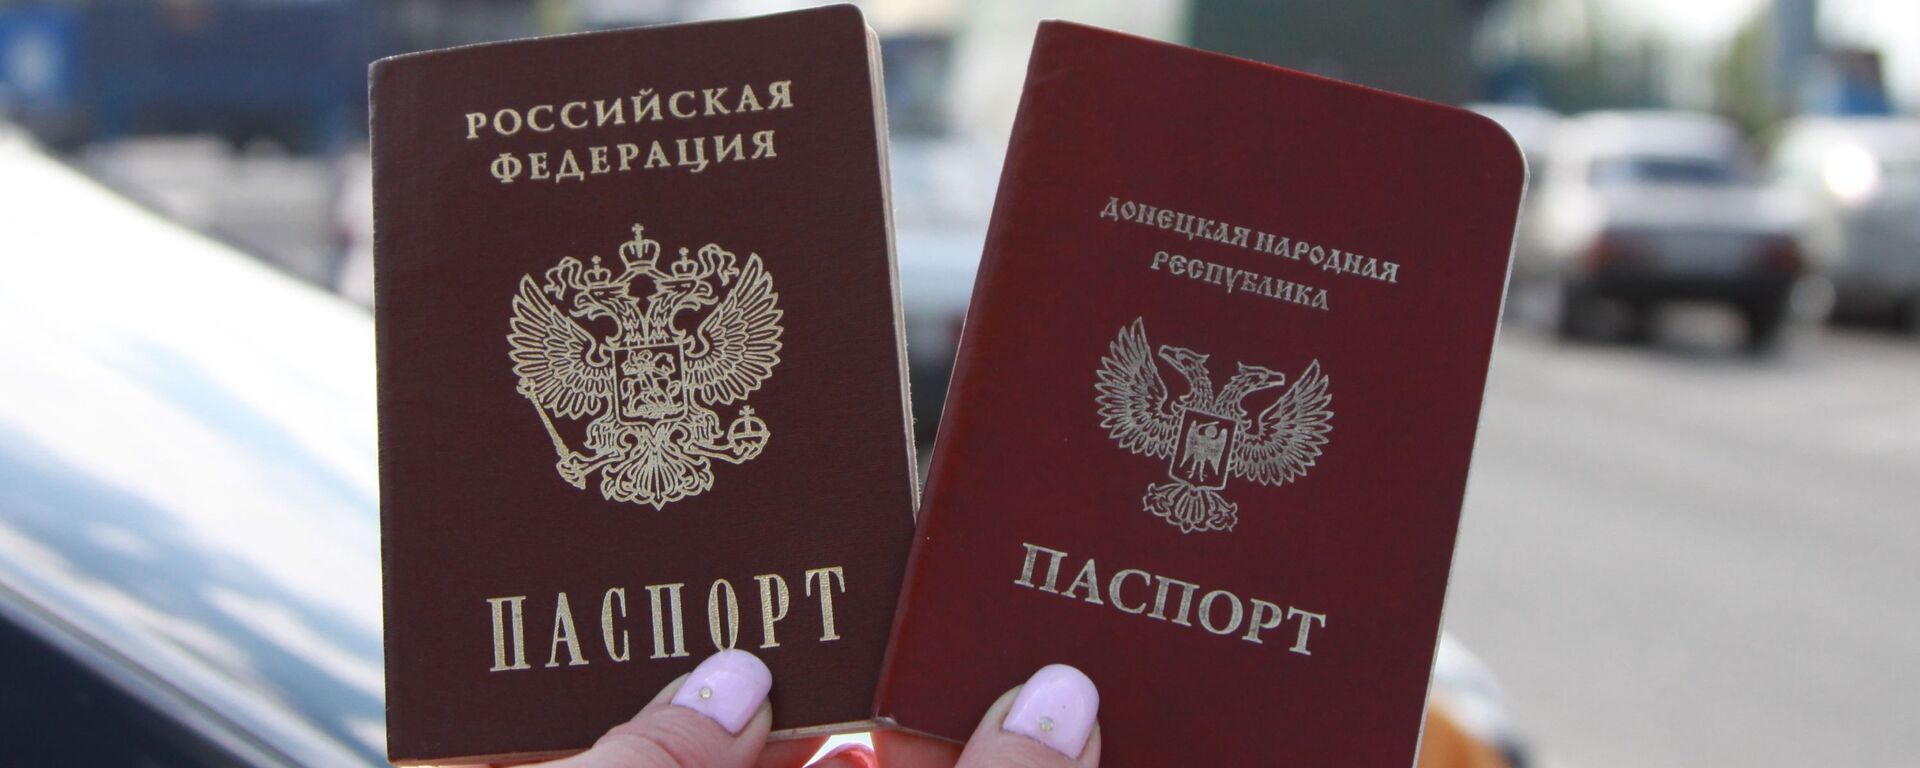 Граждане ЛНР и ДНР смогут получить паспорта РФ по упрощенной процедуре - Sputnik Южная Осетия, 1920, 14.06.2019